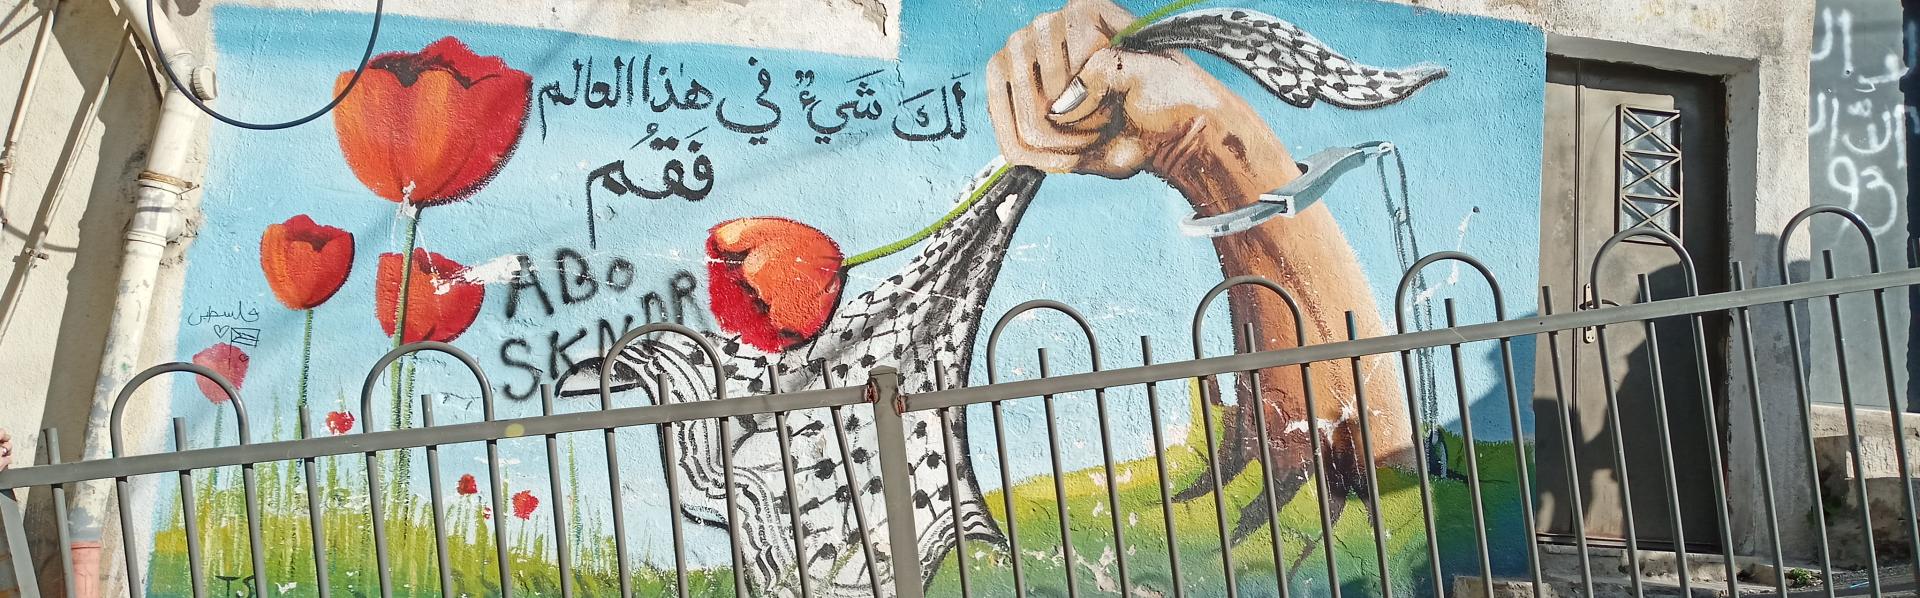 muur met rozen en keffiyeh in Palestina